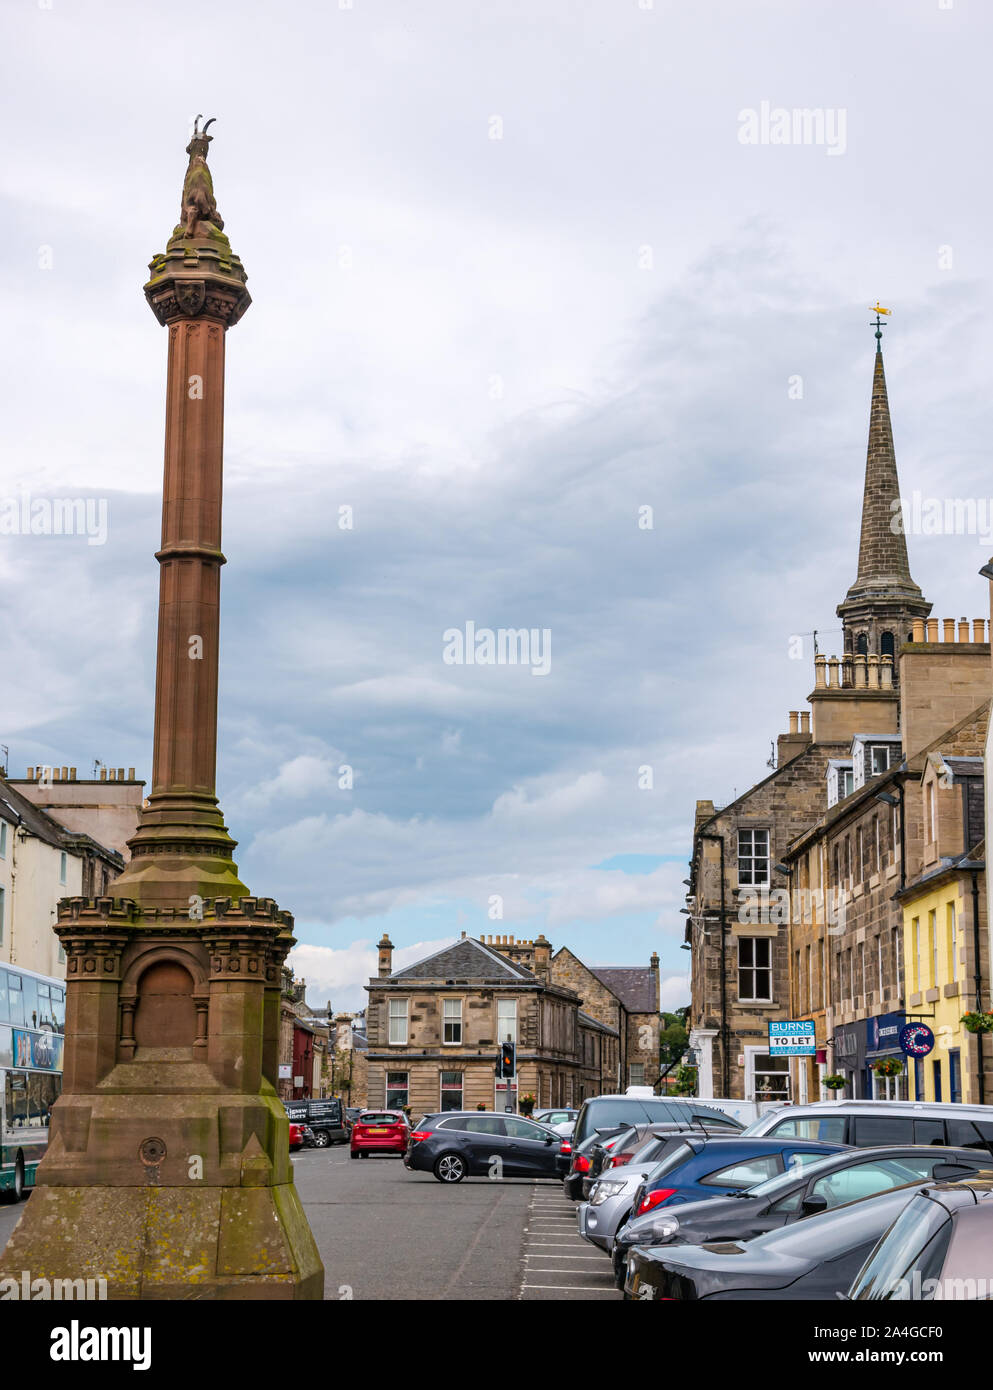 Historischen Mercat (Markt) Kreuz mit Ziege Stadt Symbol, High Street, Haddington, East Lothian, Schottland, Großbritannien Stockfoto